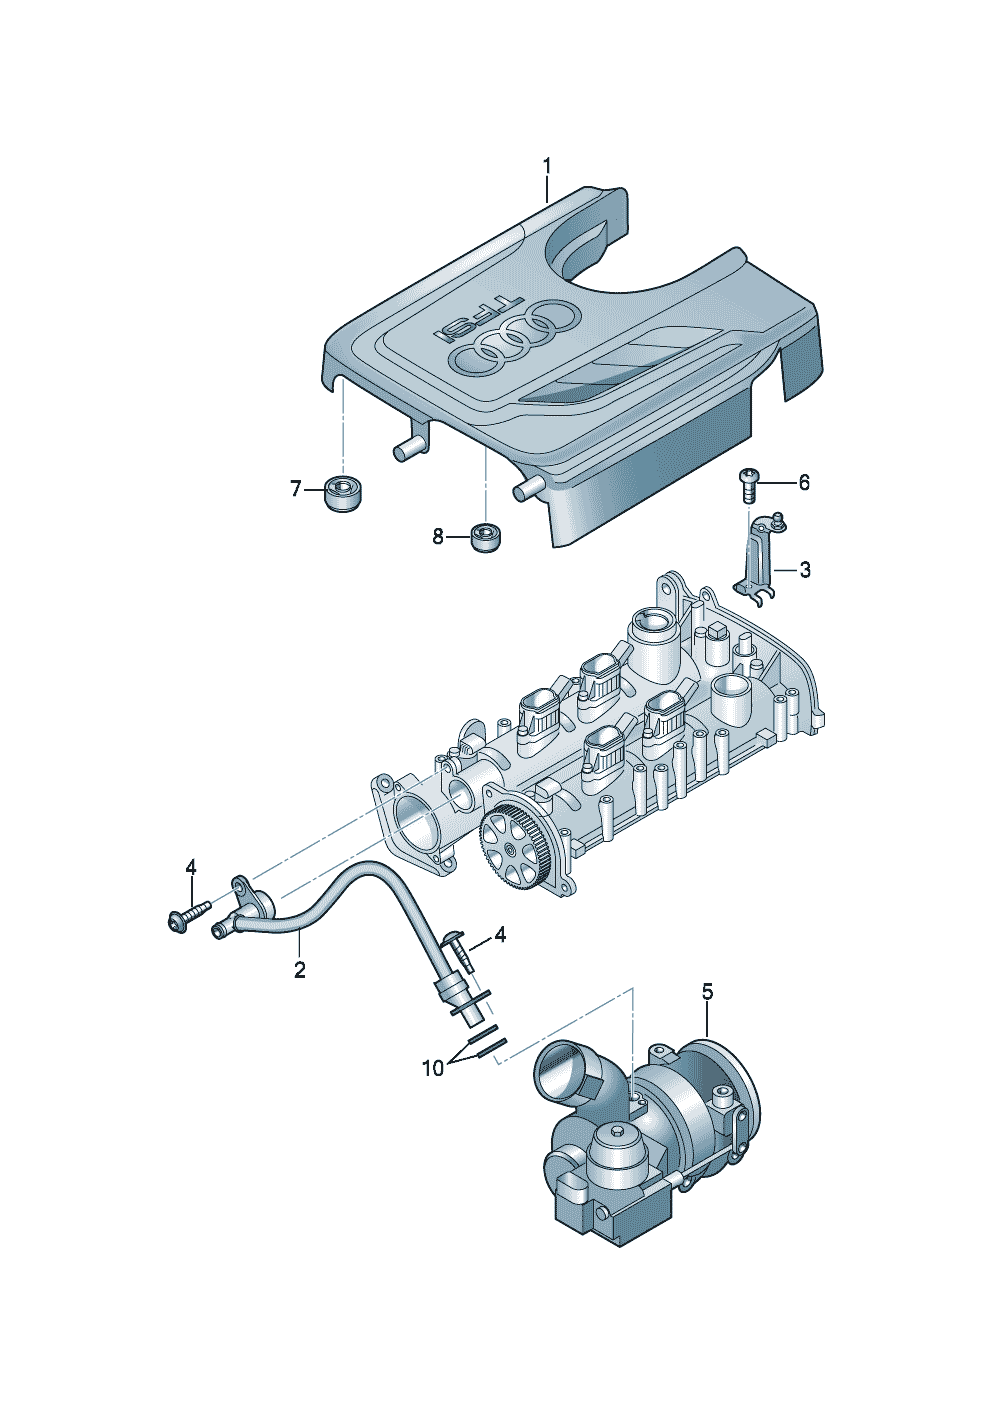 Abdeckung für MotorraumEntlüftung für Zylinderblock 1,4Ltr. - Audi A1 - a1